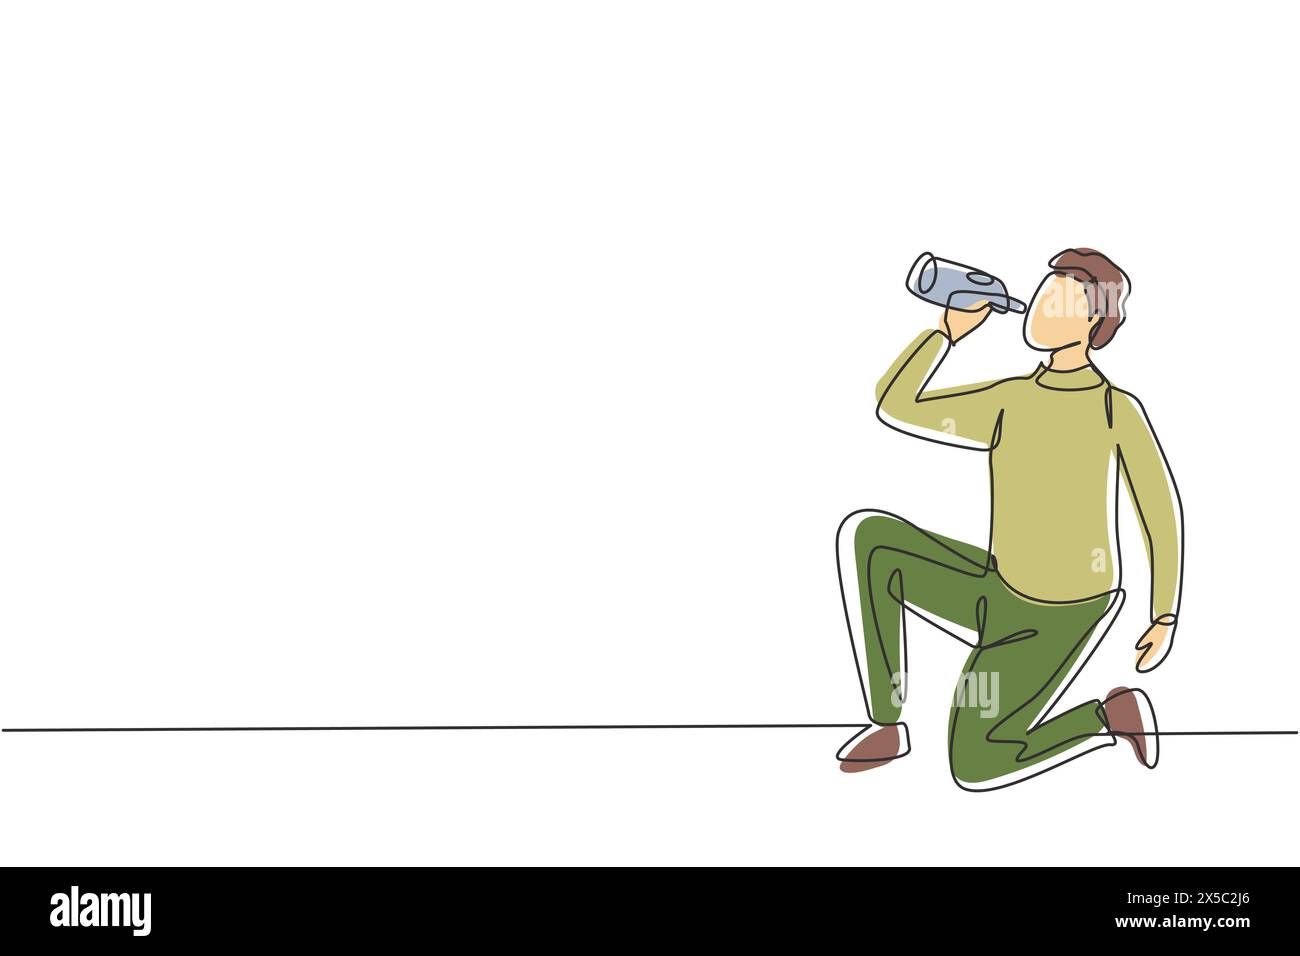 Linea singola continua che disegna il giovane arabo bevendo acqua in bottiglia mentre accovacciano dopo la corsa. L'esercizio mattutino provoca sete e disidratazione. Illustrazione Vettoriale